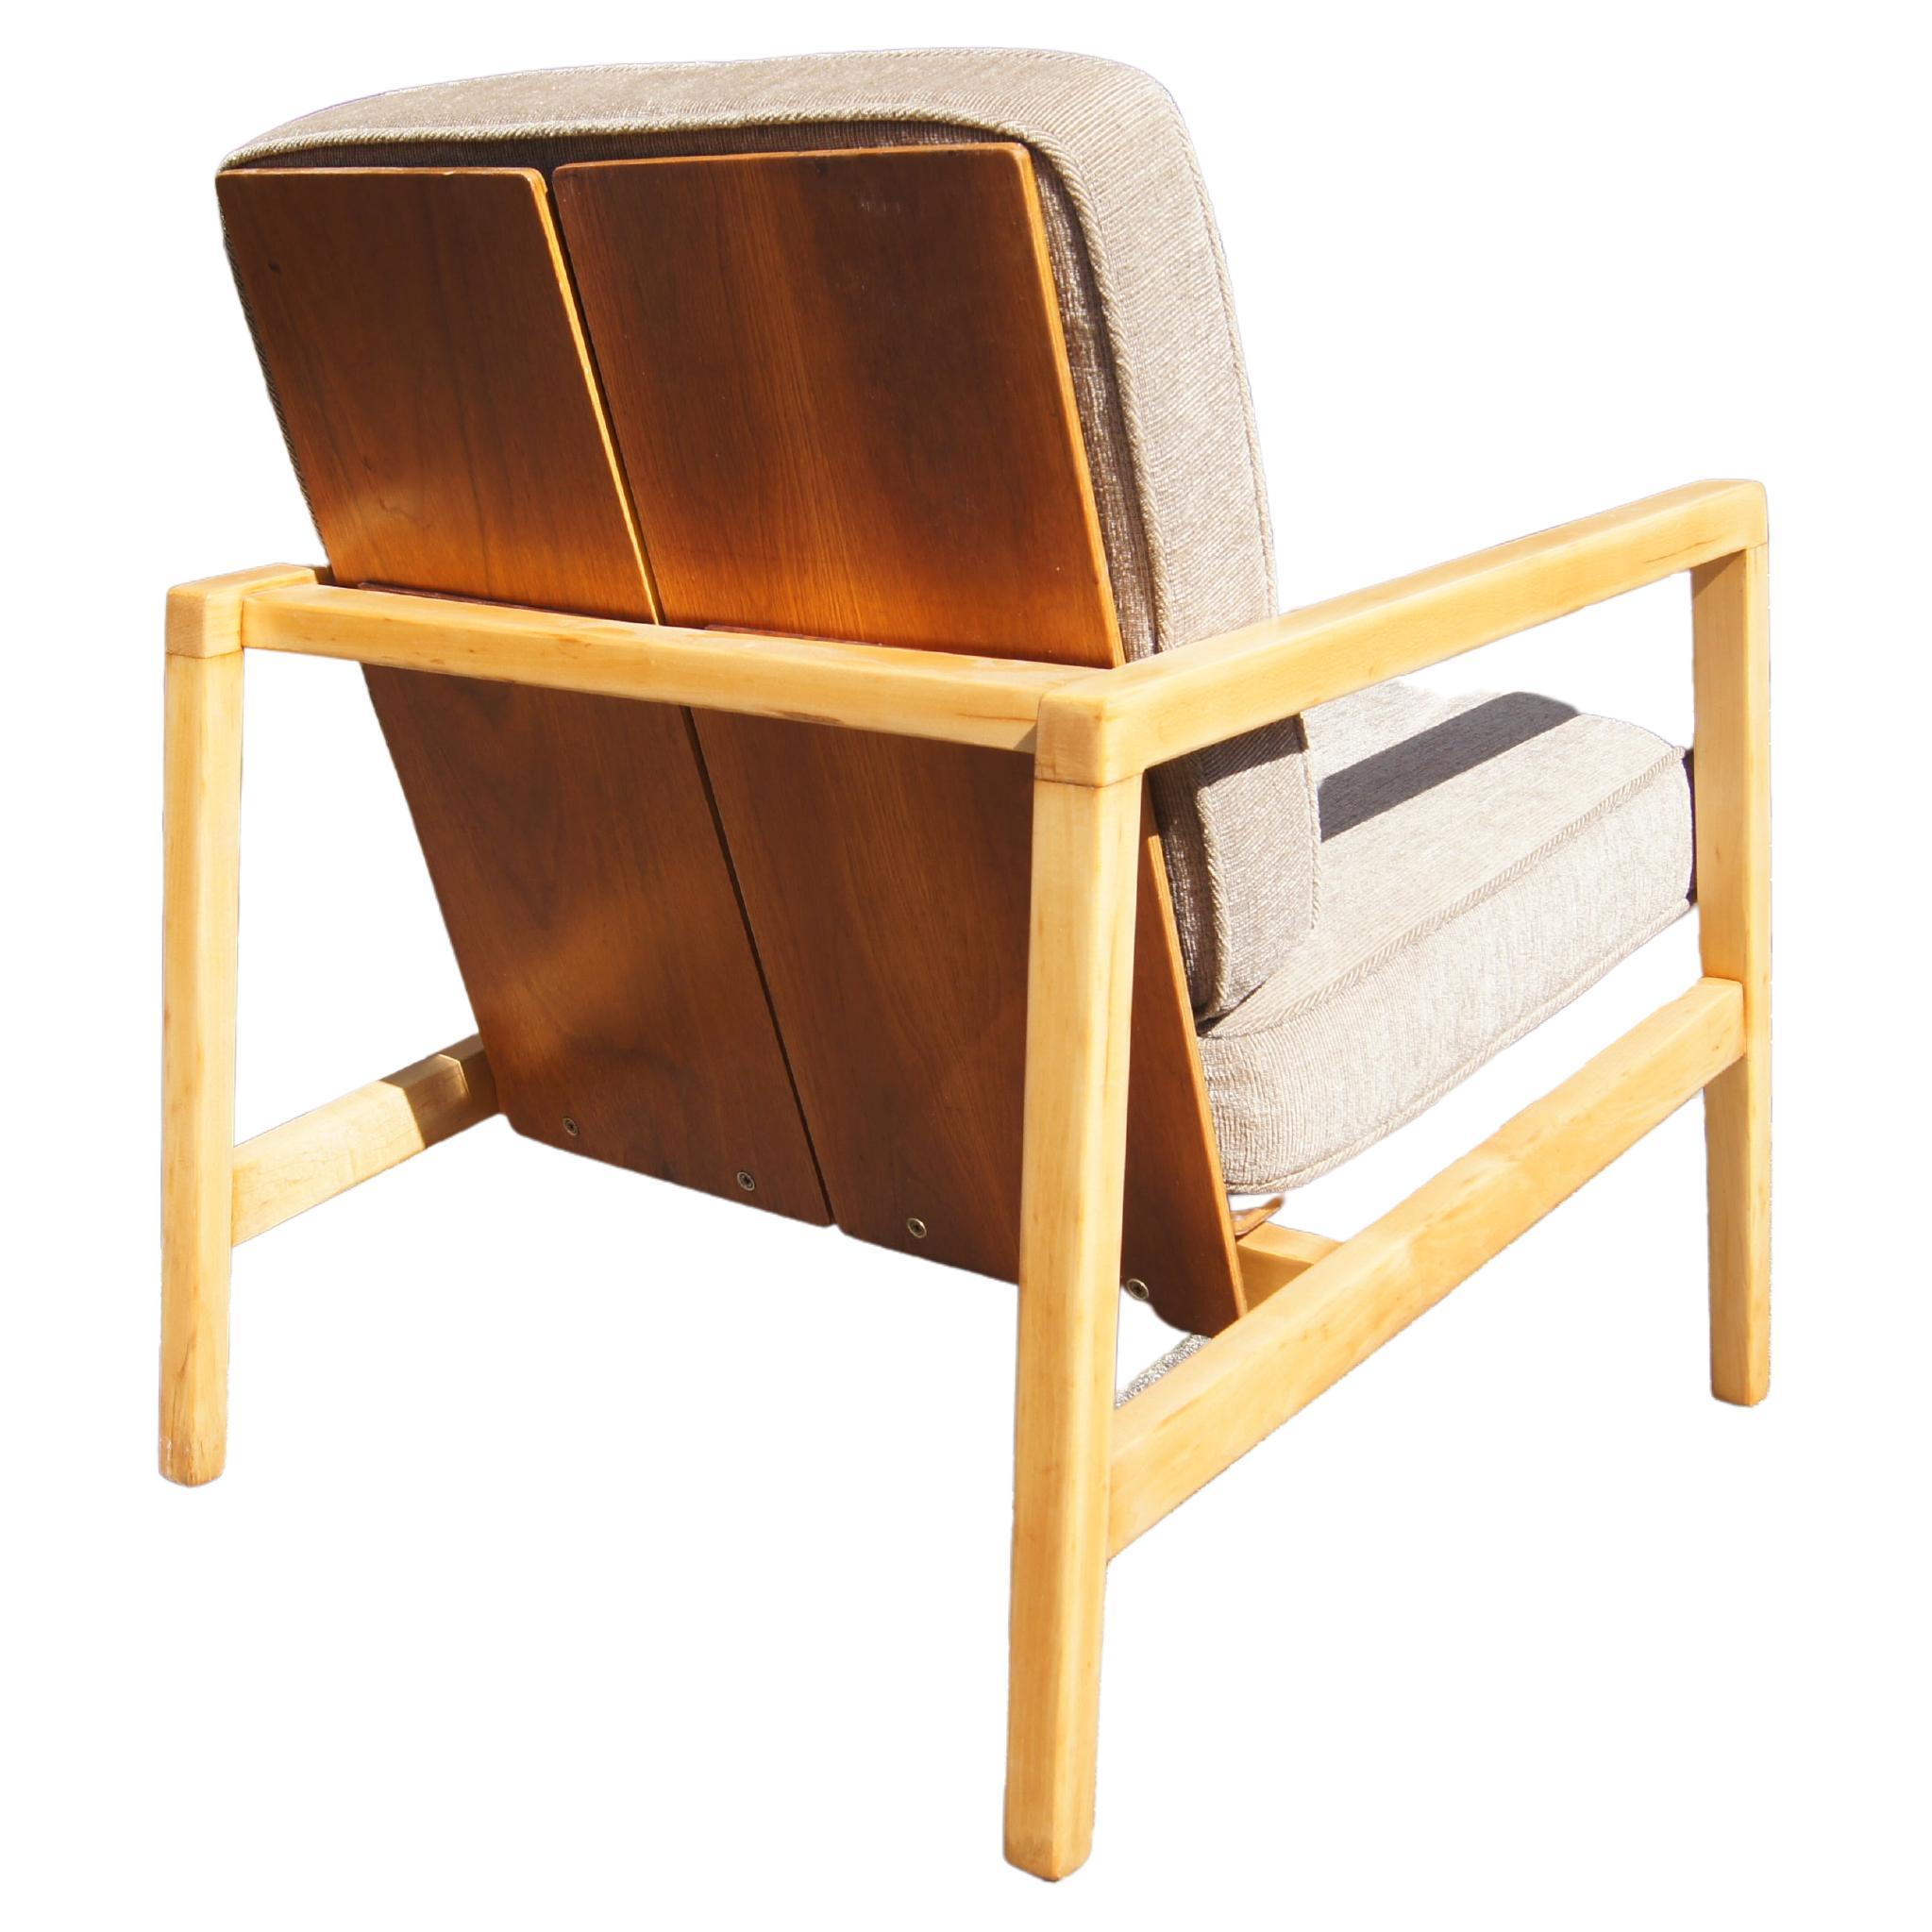 Chaise longue en érable et noyer, modèle 645, de Lewis Butler pour Knoll Associates